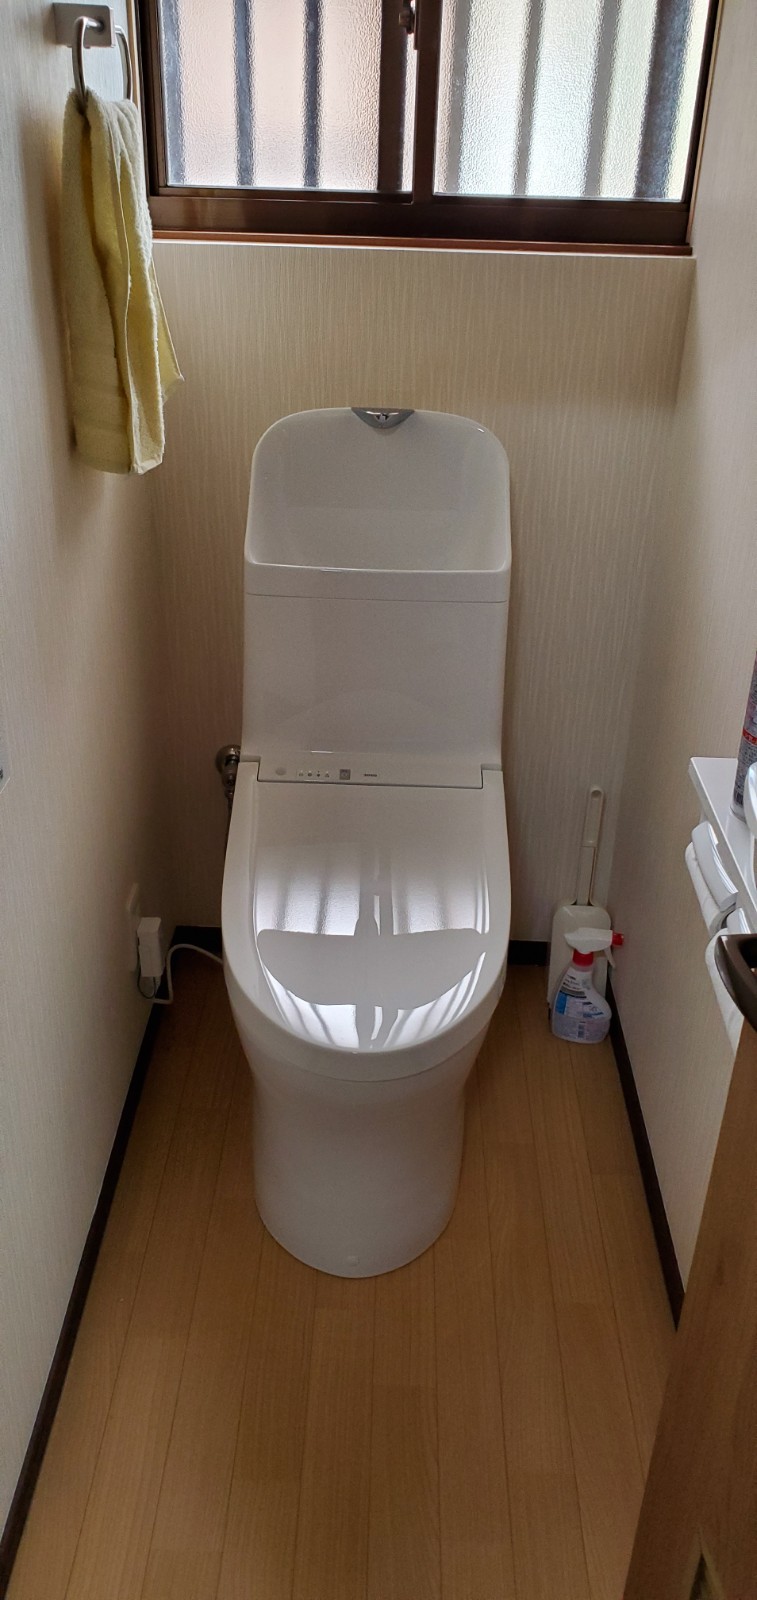 姫路市M様邸 トイレ工事完成しました。 姫路市のリフォーム会社 モリシタ・アット・リフォーム